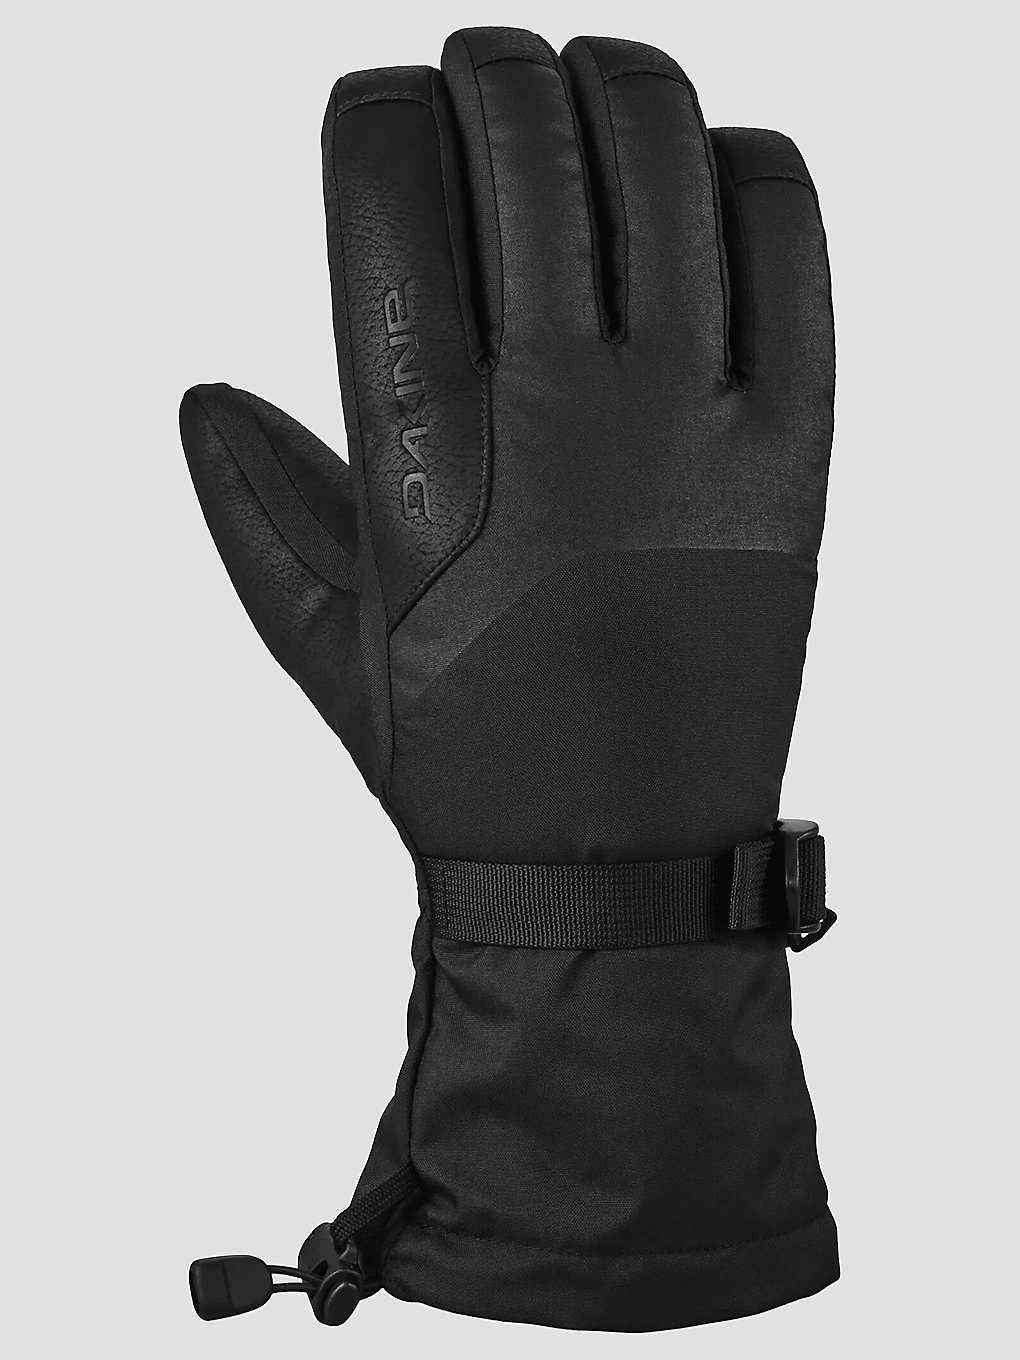 Dakine Nova Handschoenen zwart